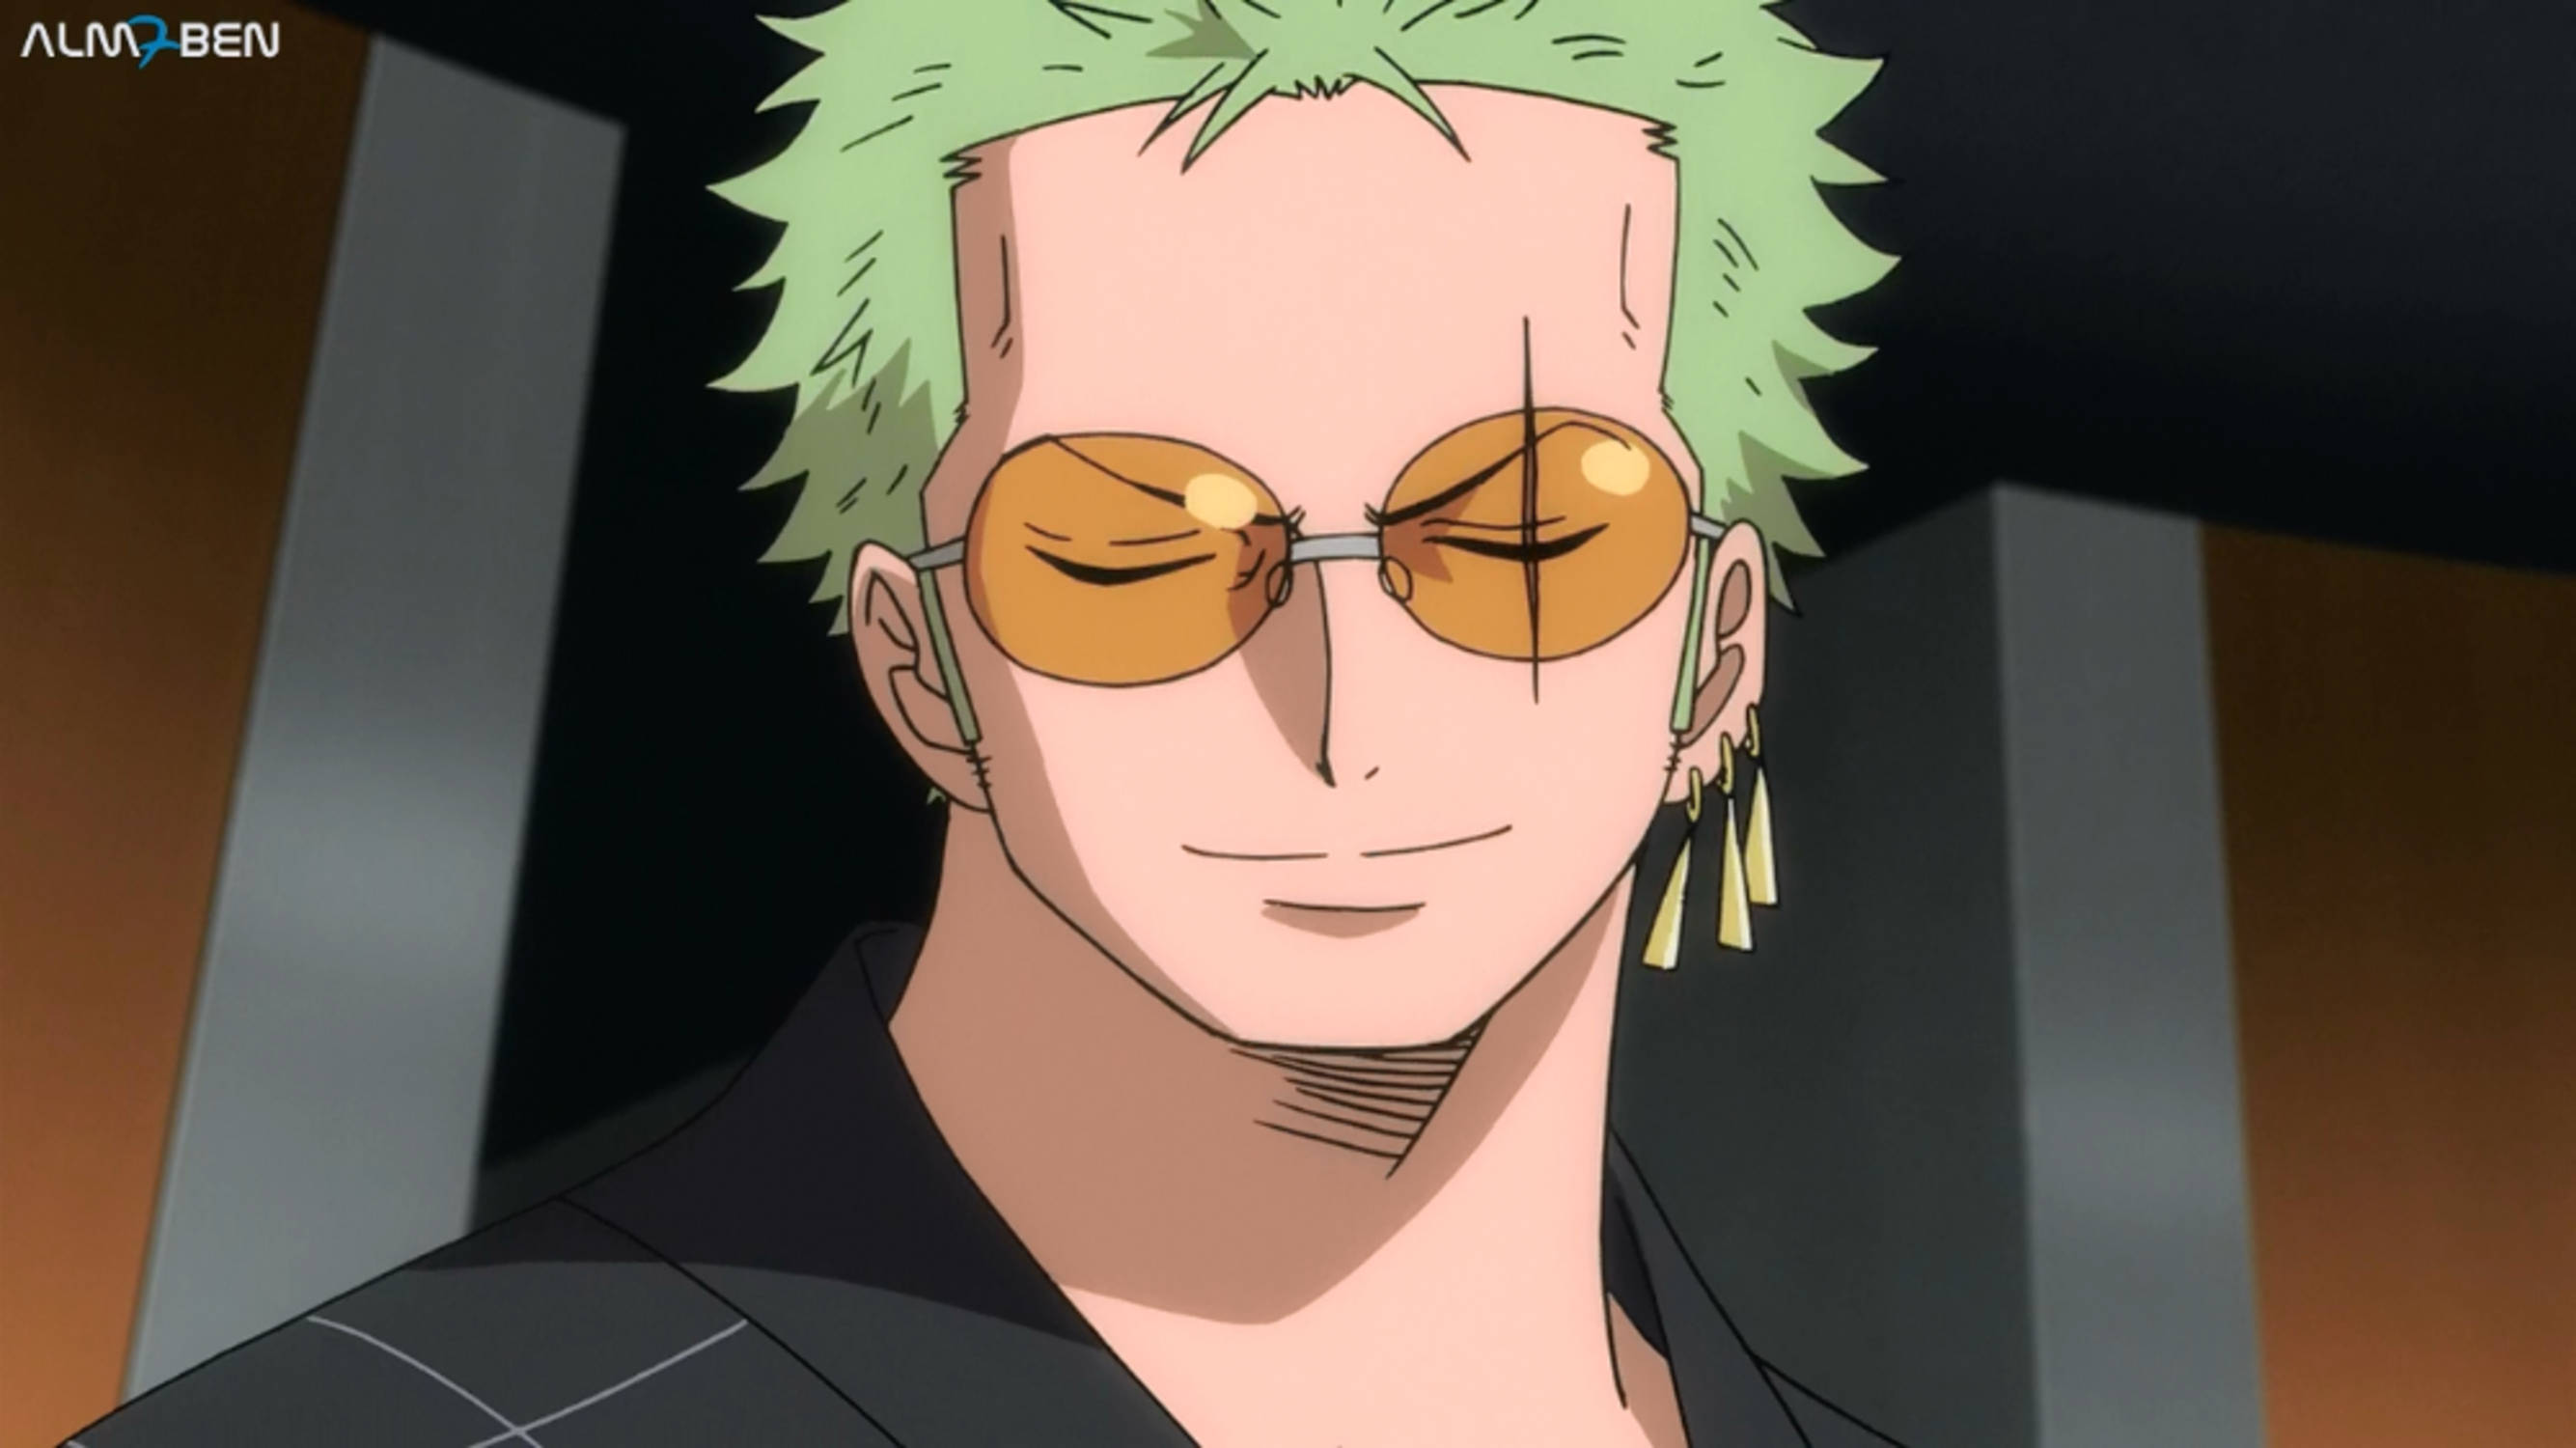 Download Anime Roronoa Zoro PFP In Sunglasses Wallpaper